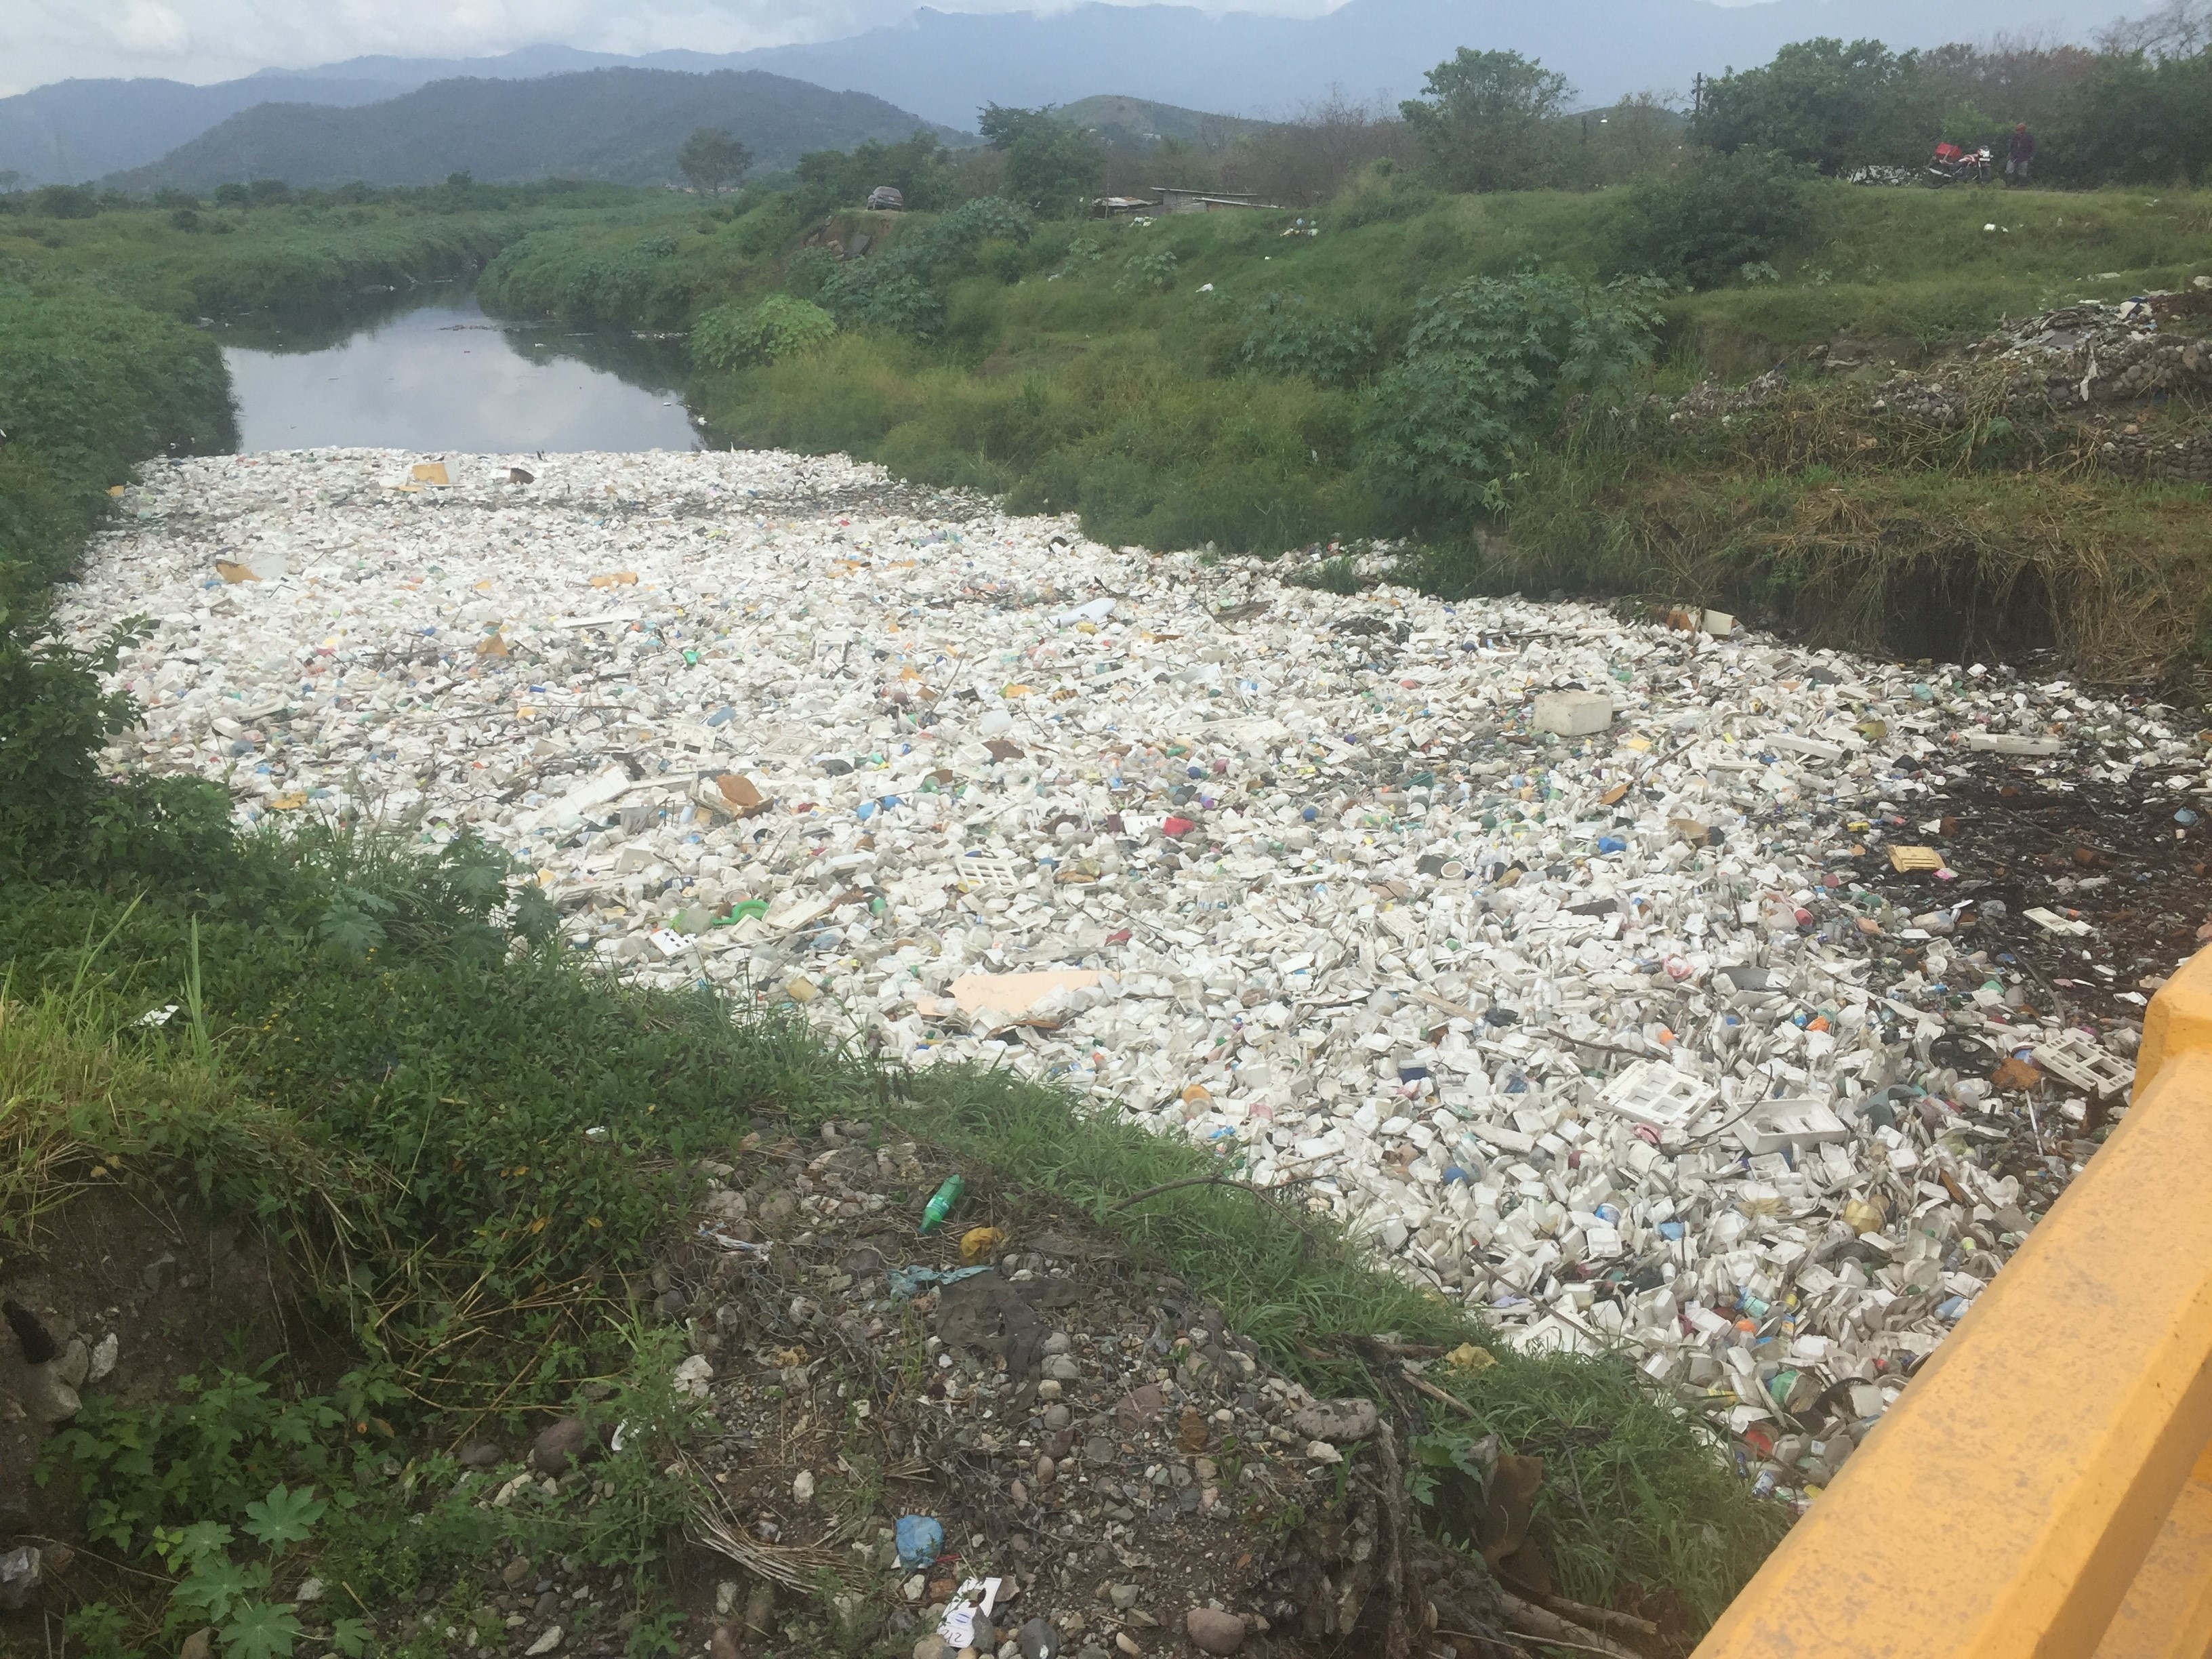 Accumulated litter in a river in Guatemala